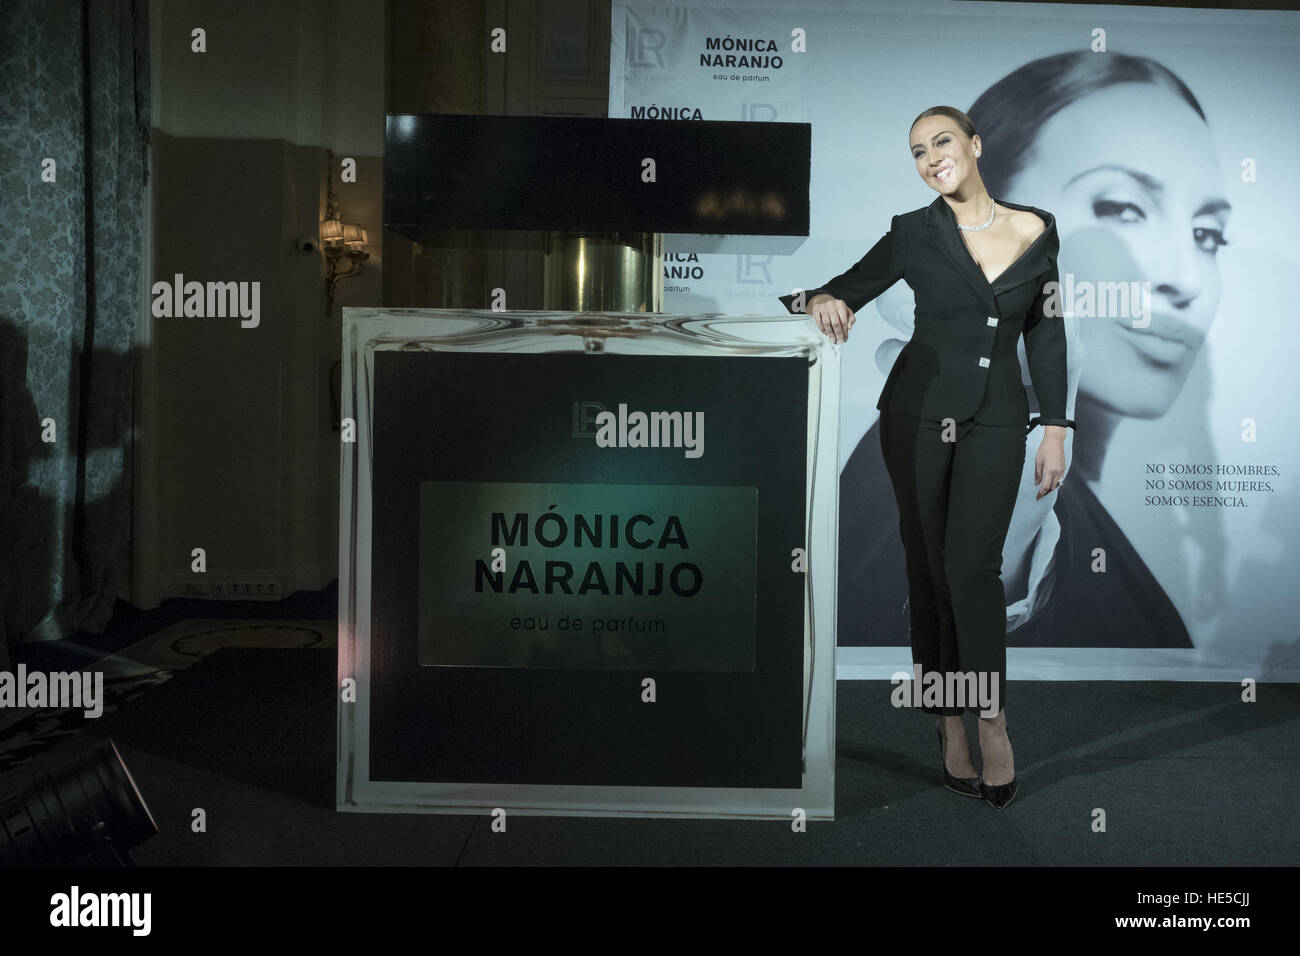 Monica naranjo promociona su nuevo perfume en Madrid con: Monica naranjo  donde: Madrid, España cuando: 10 Nov 2016 Fotografía de stock - Alamy